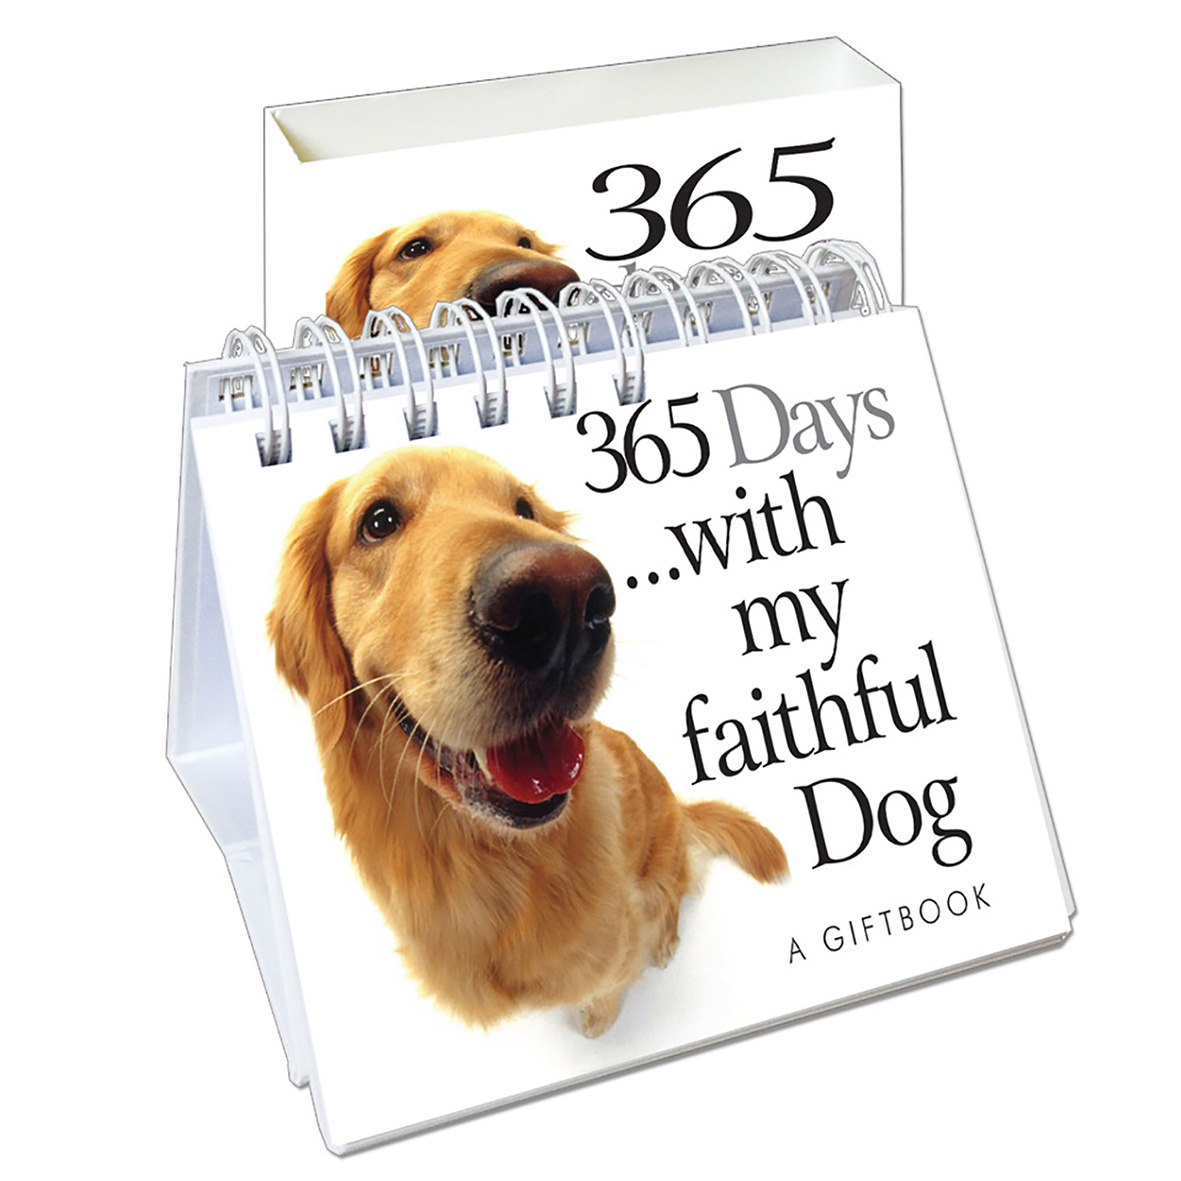 HE 365 Days with my faithful Dog